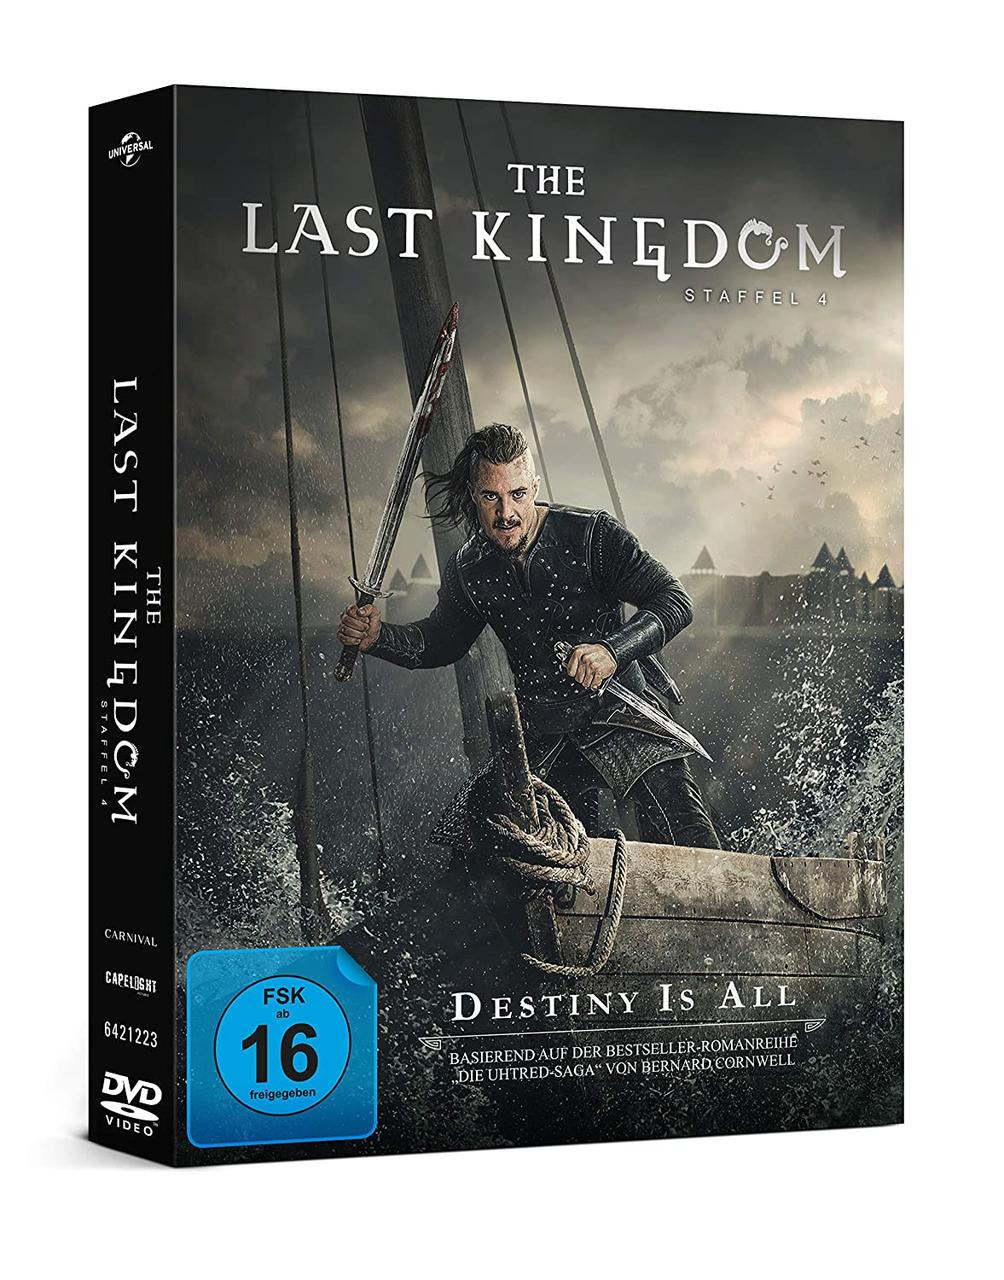 KINGDOM THE LAST 4.STAFFEL DVD